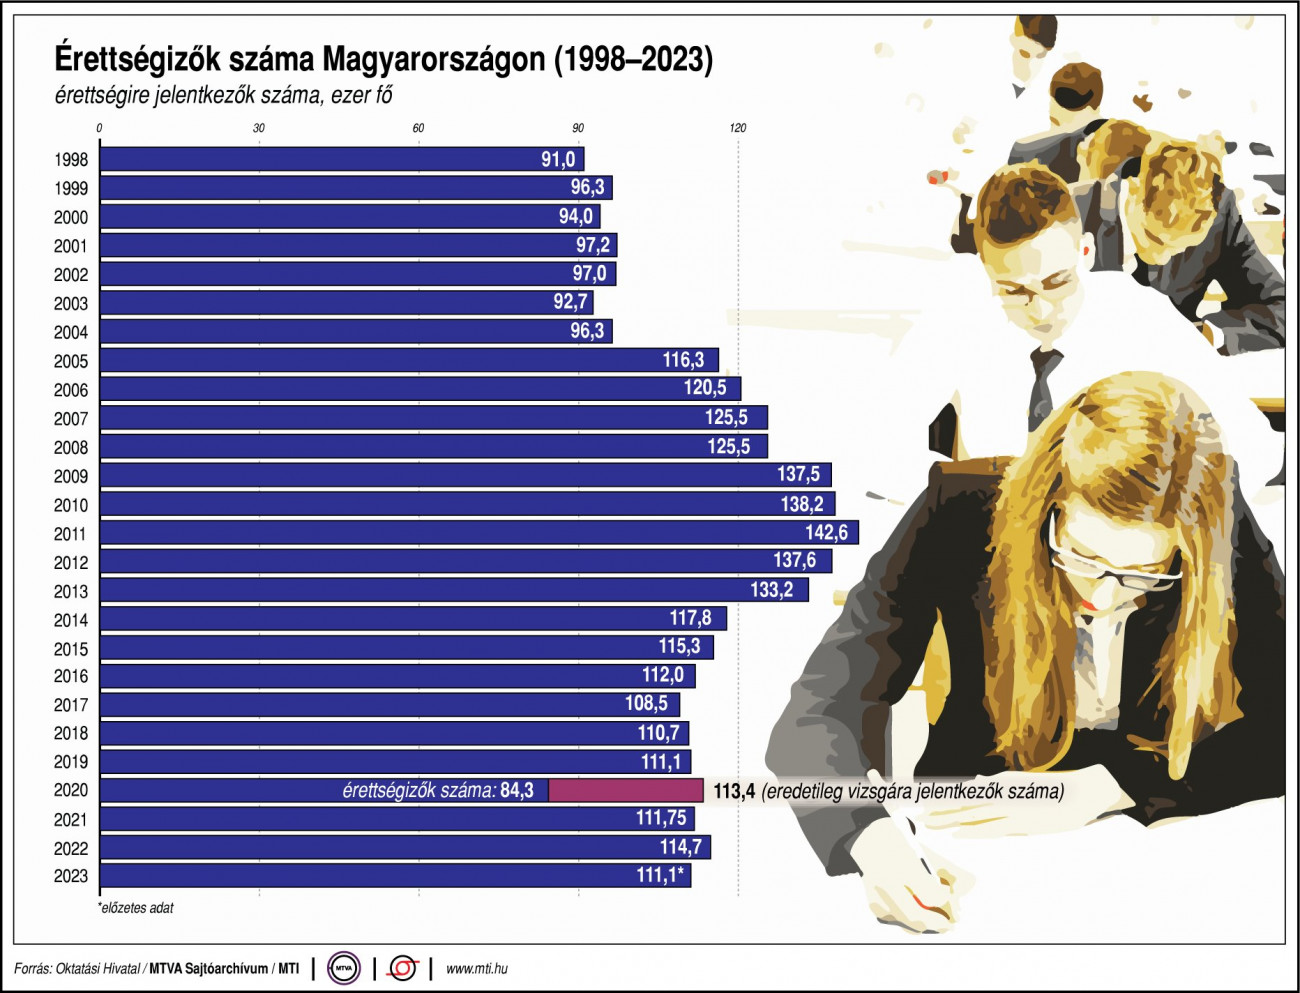 Érettségizők száma Magyarországon, 1998-2023, ezer fő